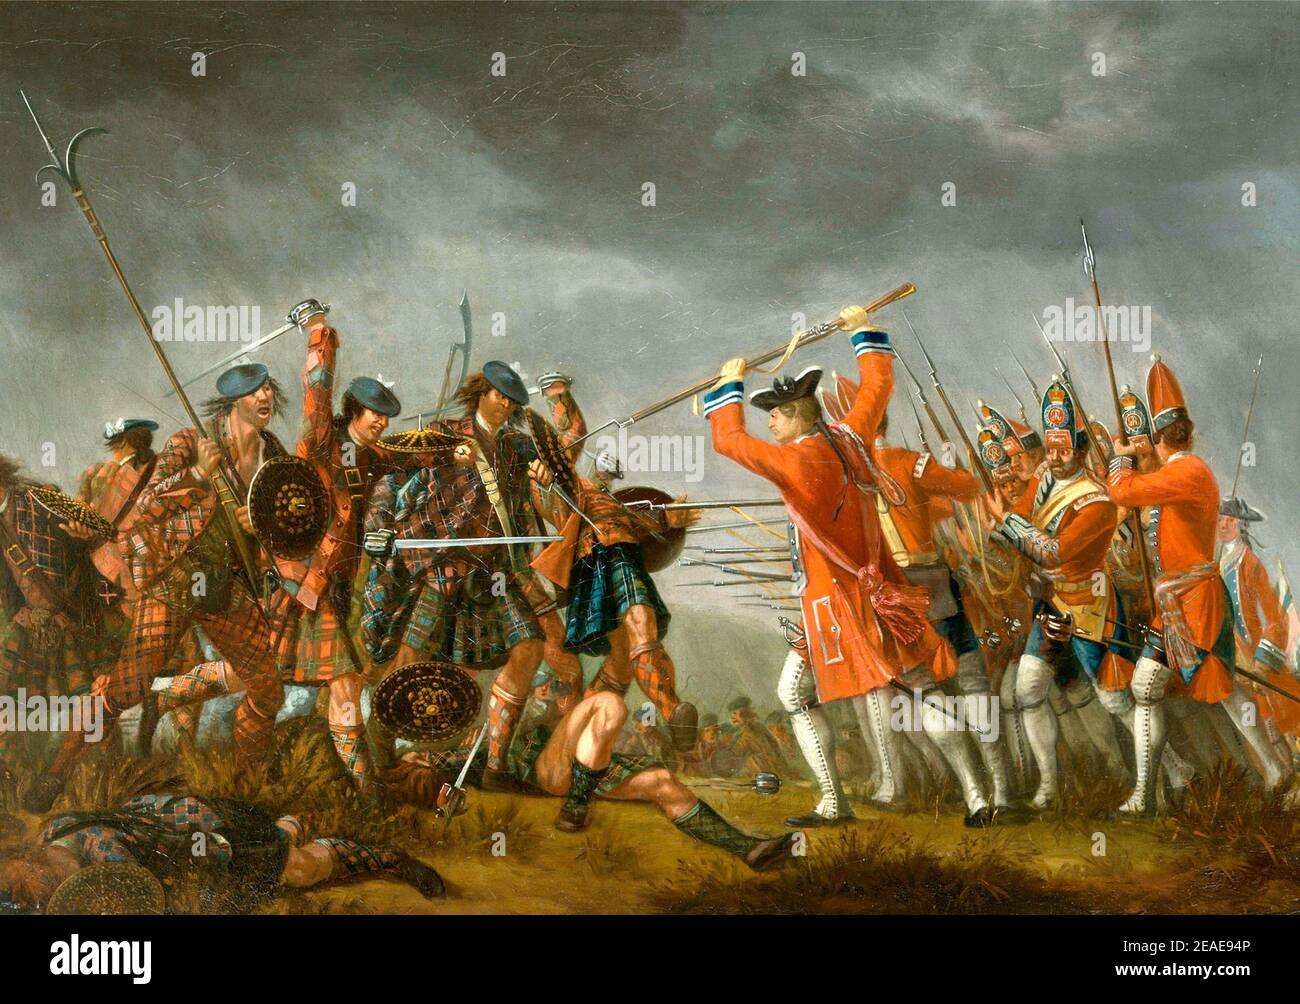 La bataille de Culloden - un incident dans la rébellion de 1745 - peinture de David Morier. Banque D'Images